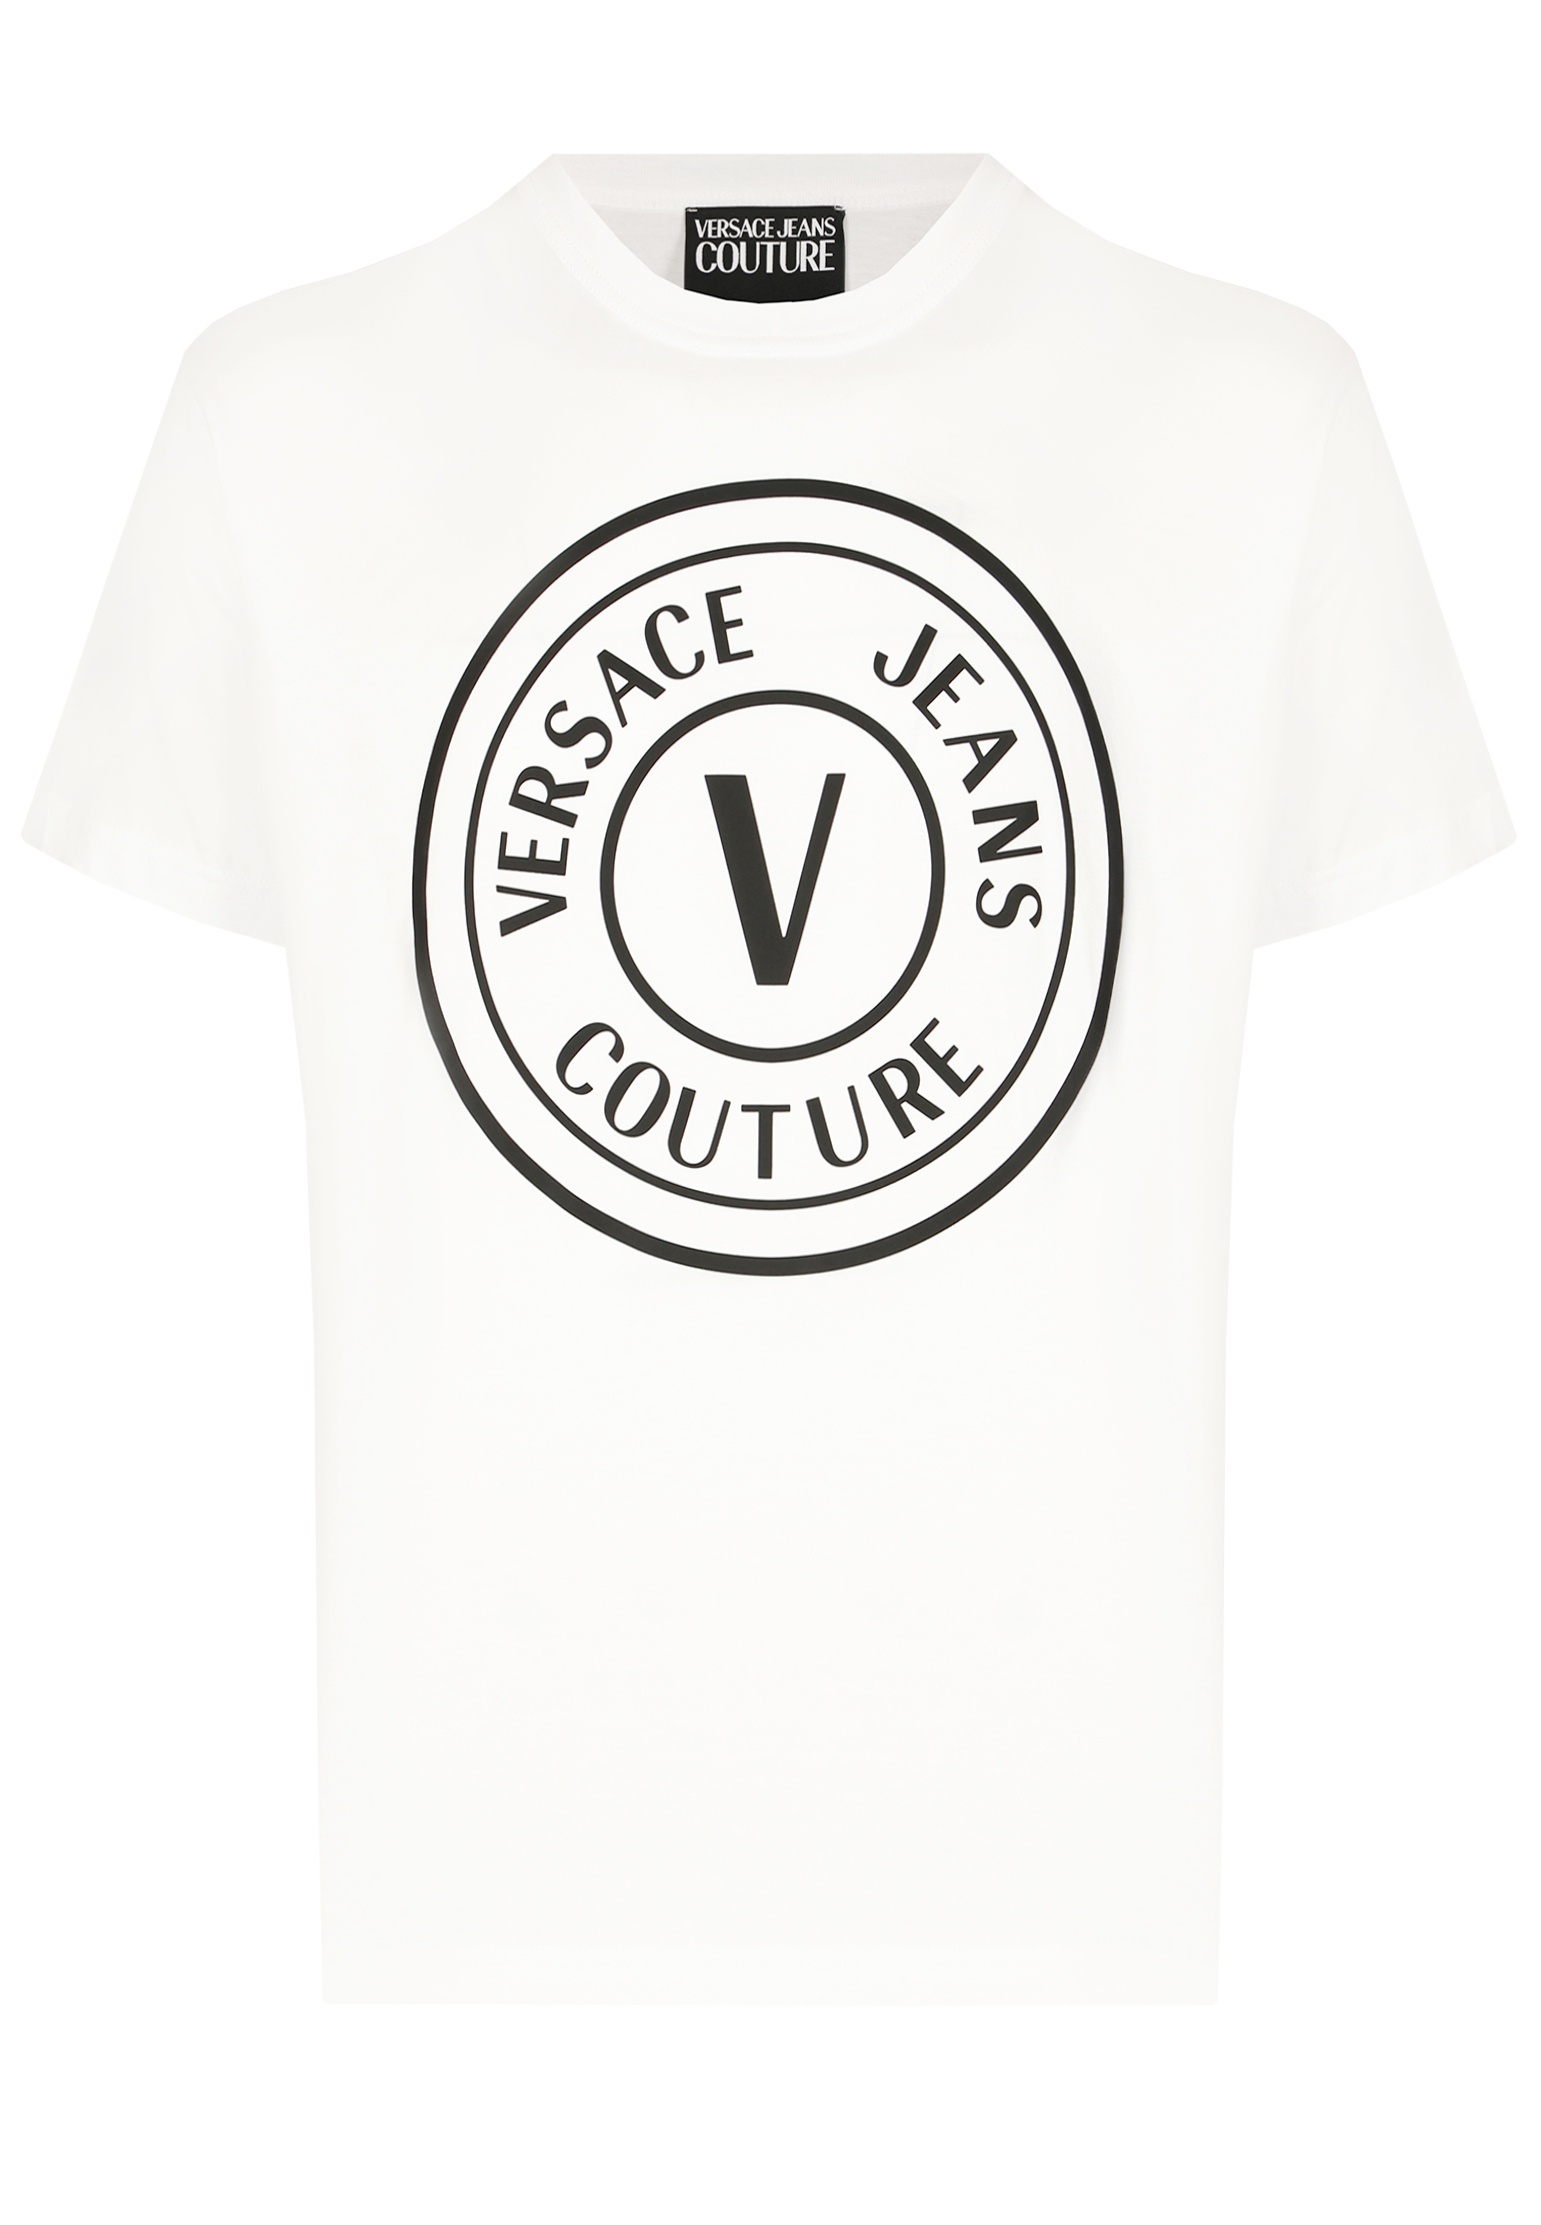 мужская футболка versace, белая